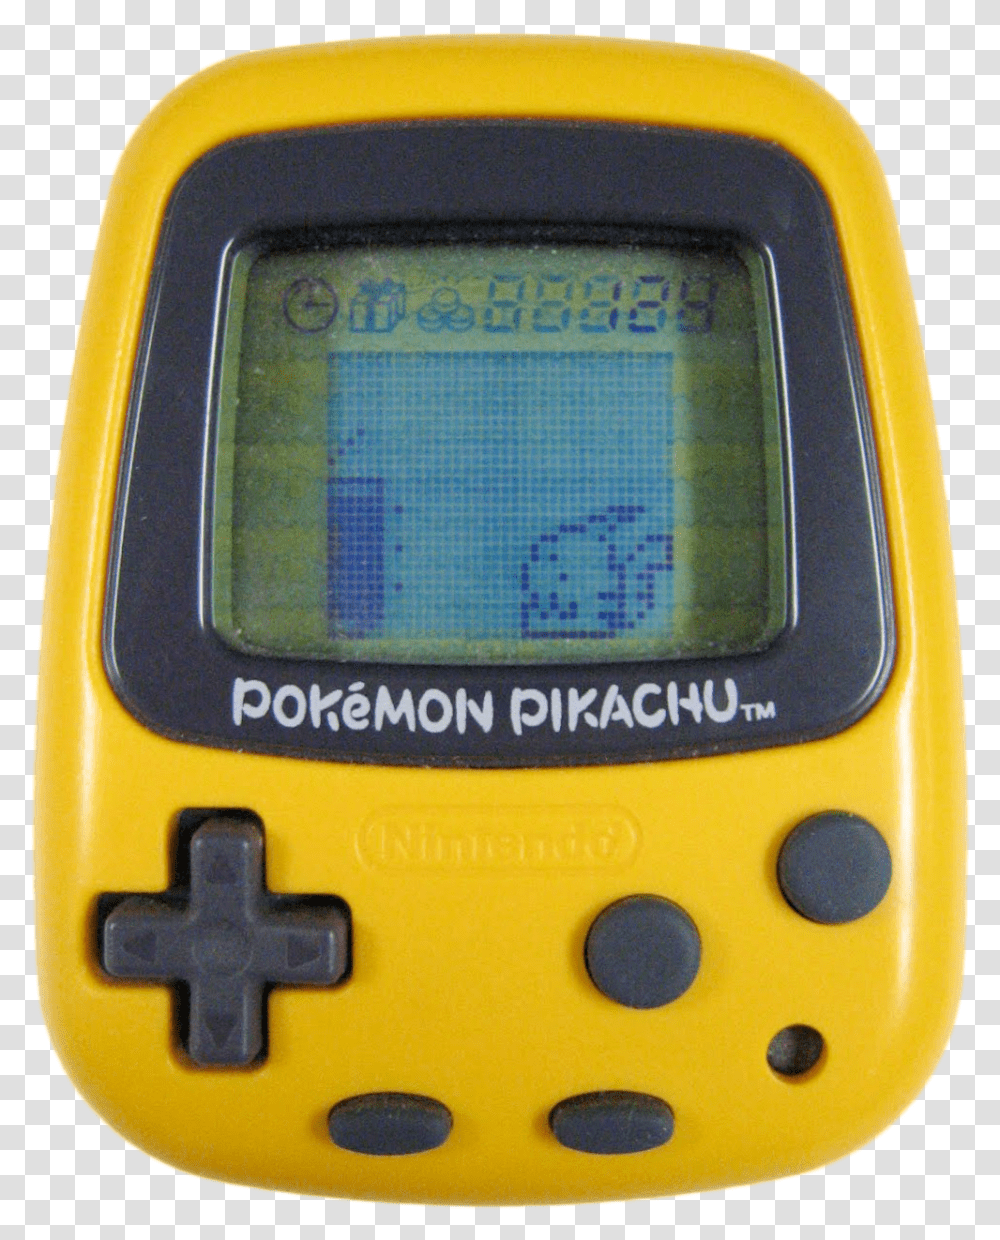 Nintendo Pokemon Mini, Mobile Phone, Electronics, Cell Phone, GPS Transparent Png